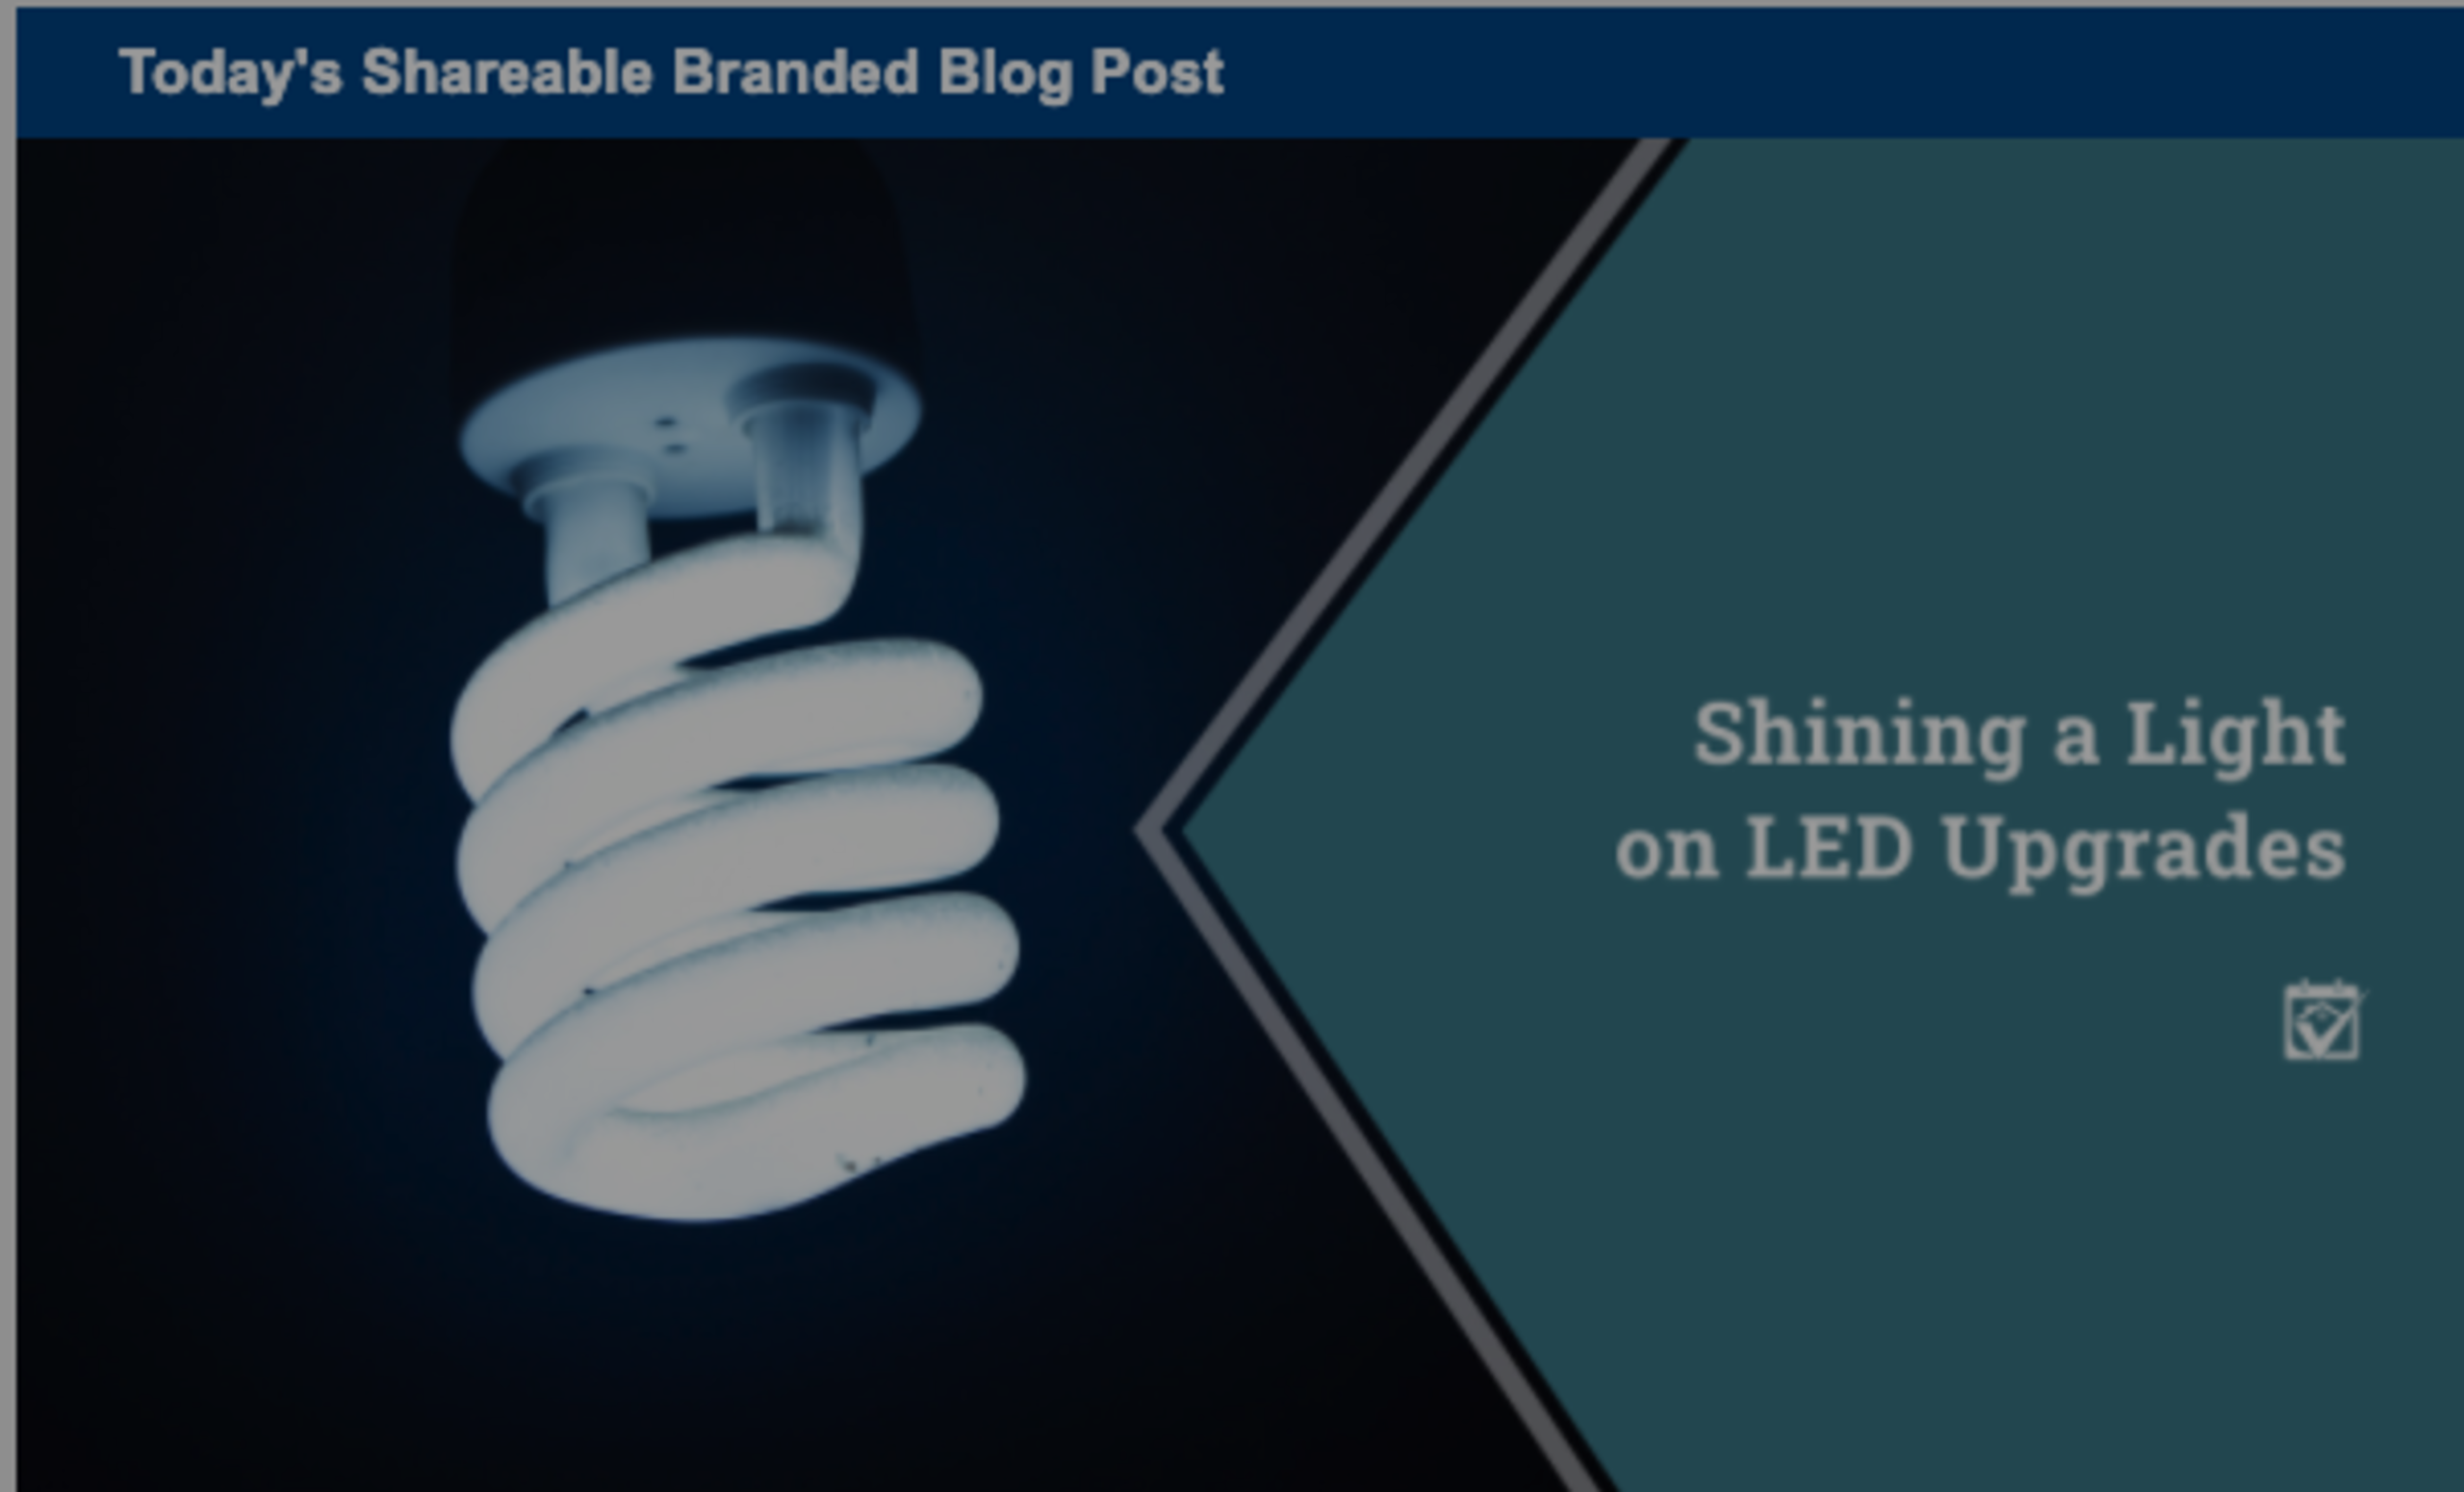 Shining a Light on LED Upgrades